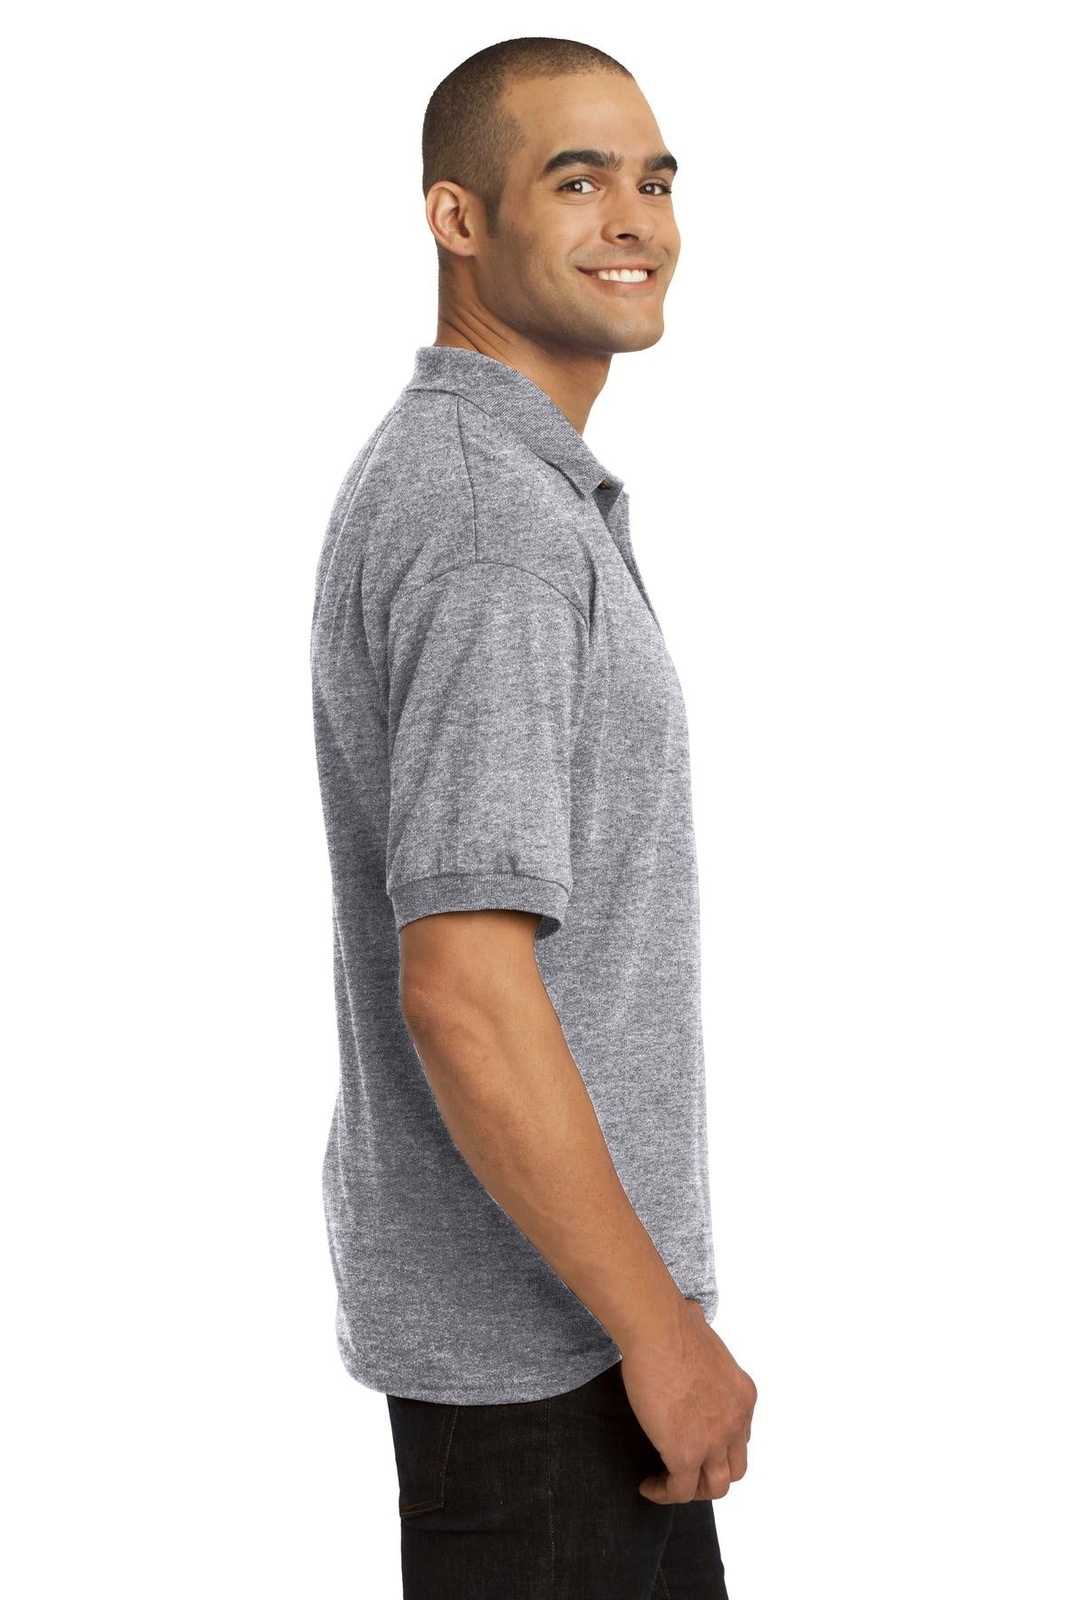 Gildan 8900 DryBlend 6-Ounce Jersey Knit Sport Shirt with Pocket - Sport Gray - HIT a Double